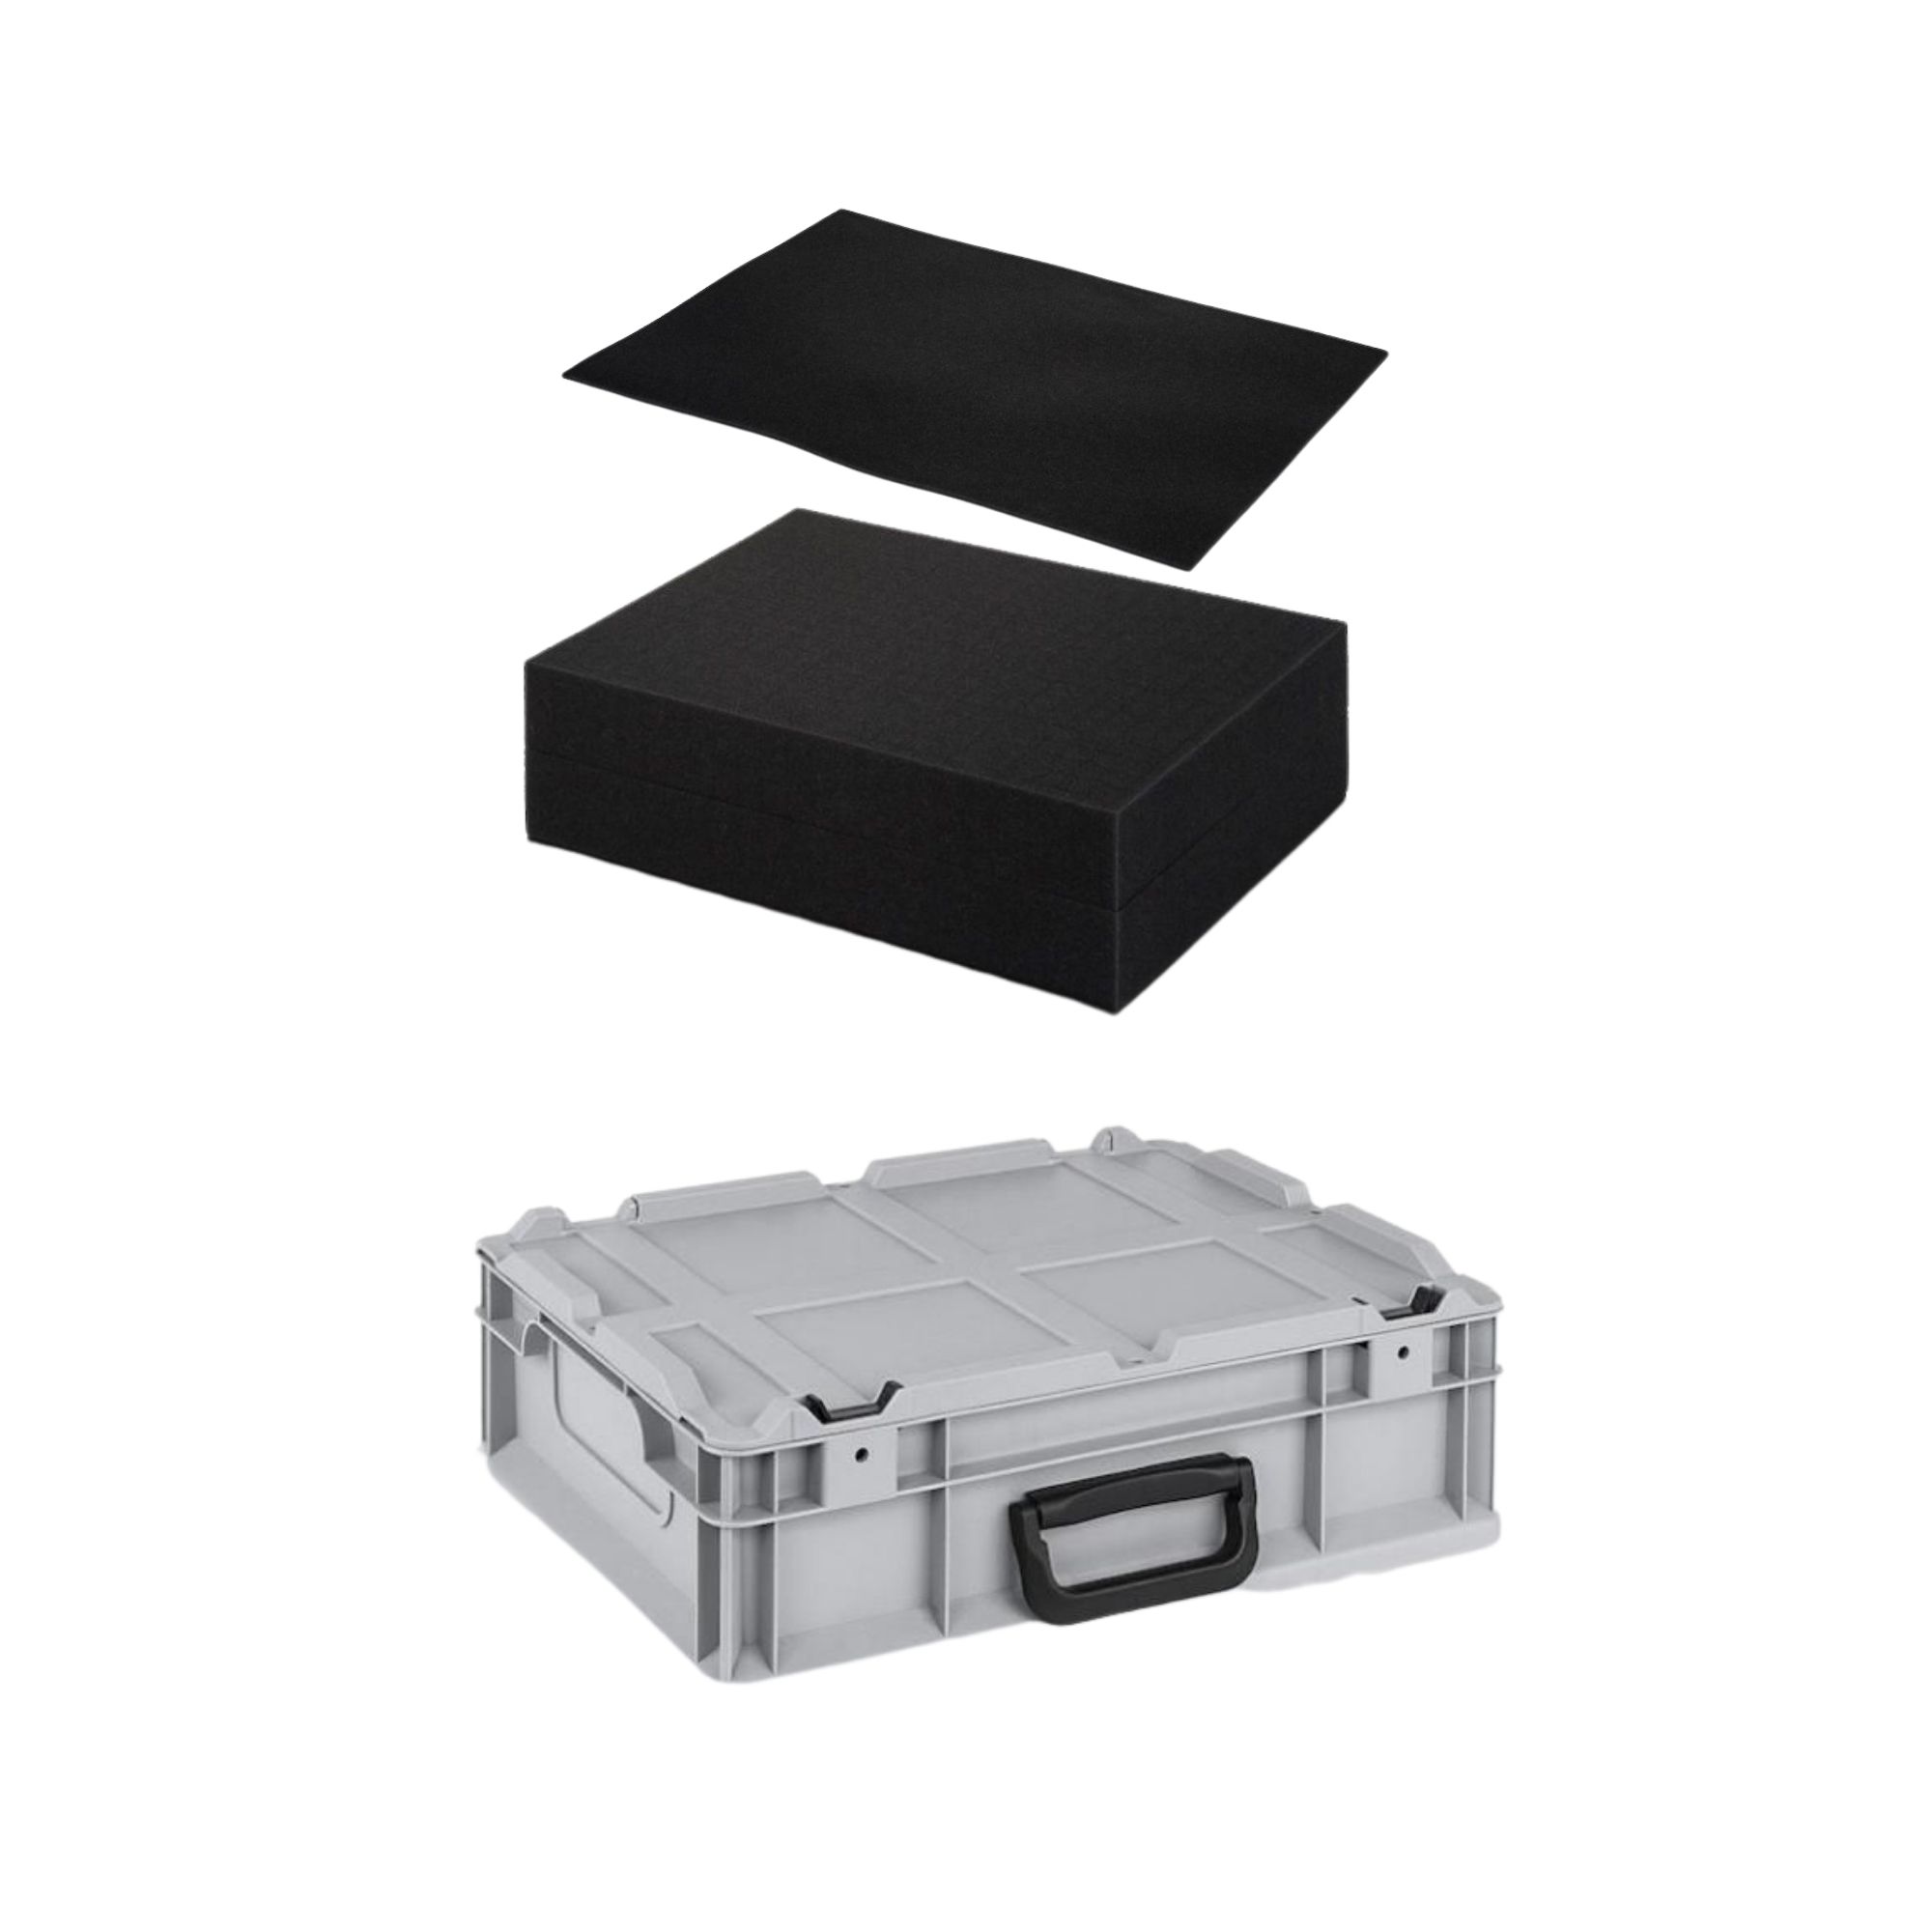 Eurobox NextGen Portable mit Rasterschaumstoff & Schaumstoffeinlage | HxBxT 13,5x30x40cm | 11 Liter | Eurobehälter, Transportbox, Transportbehälter, Stapelbehälter